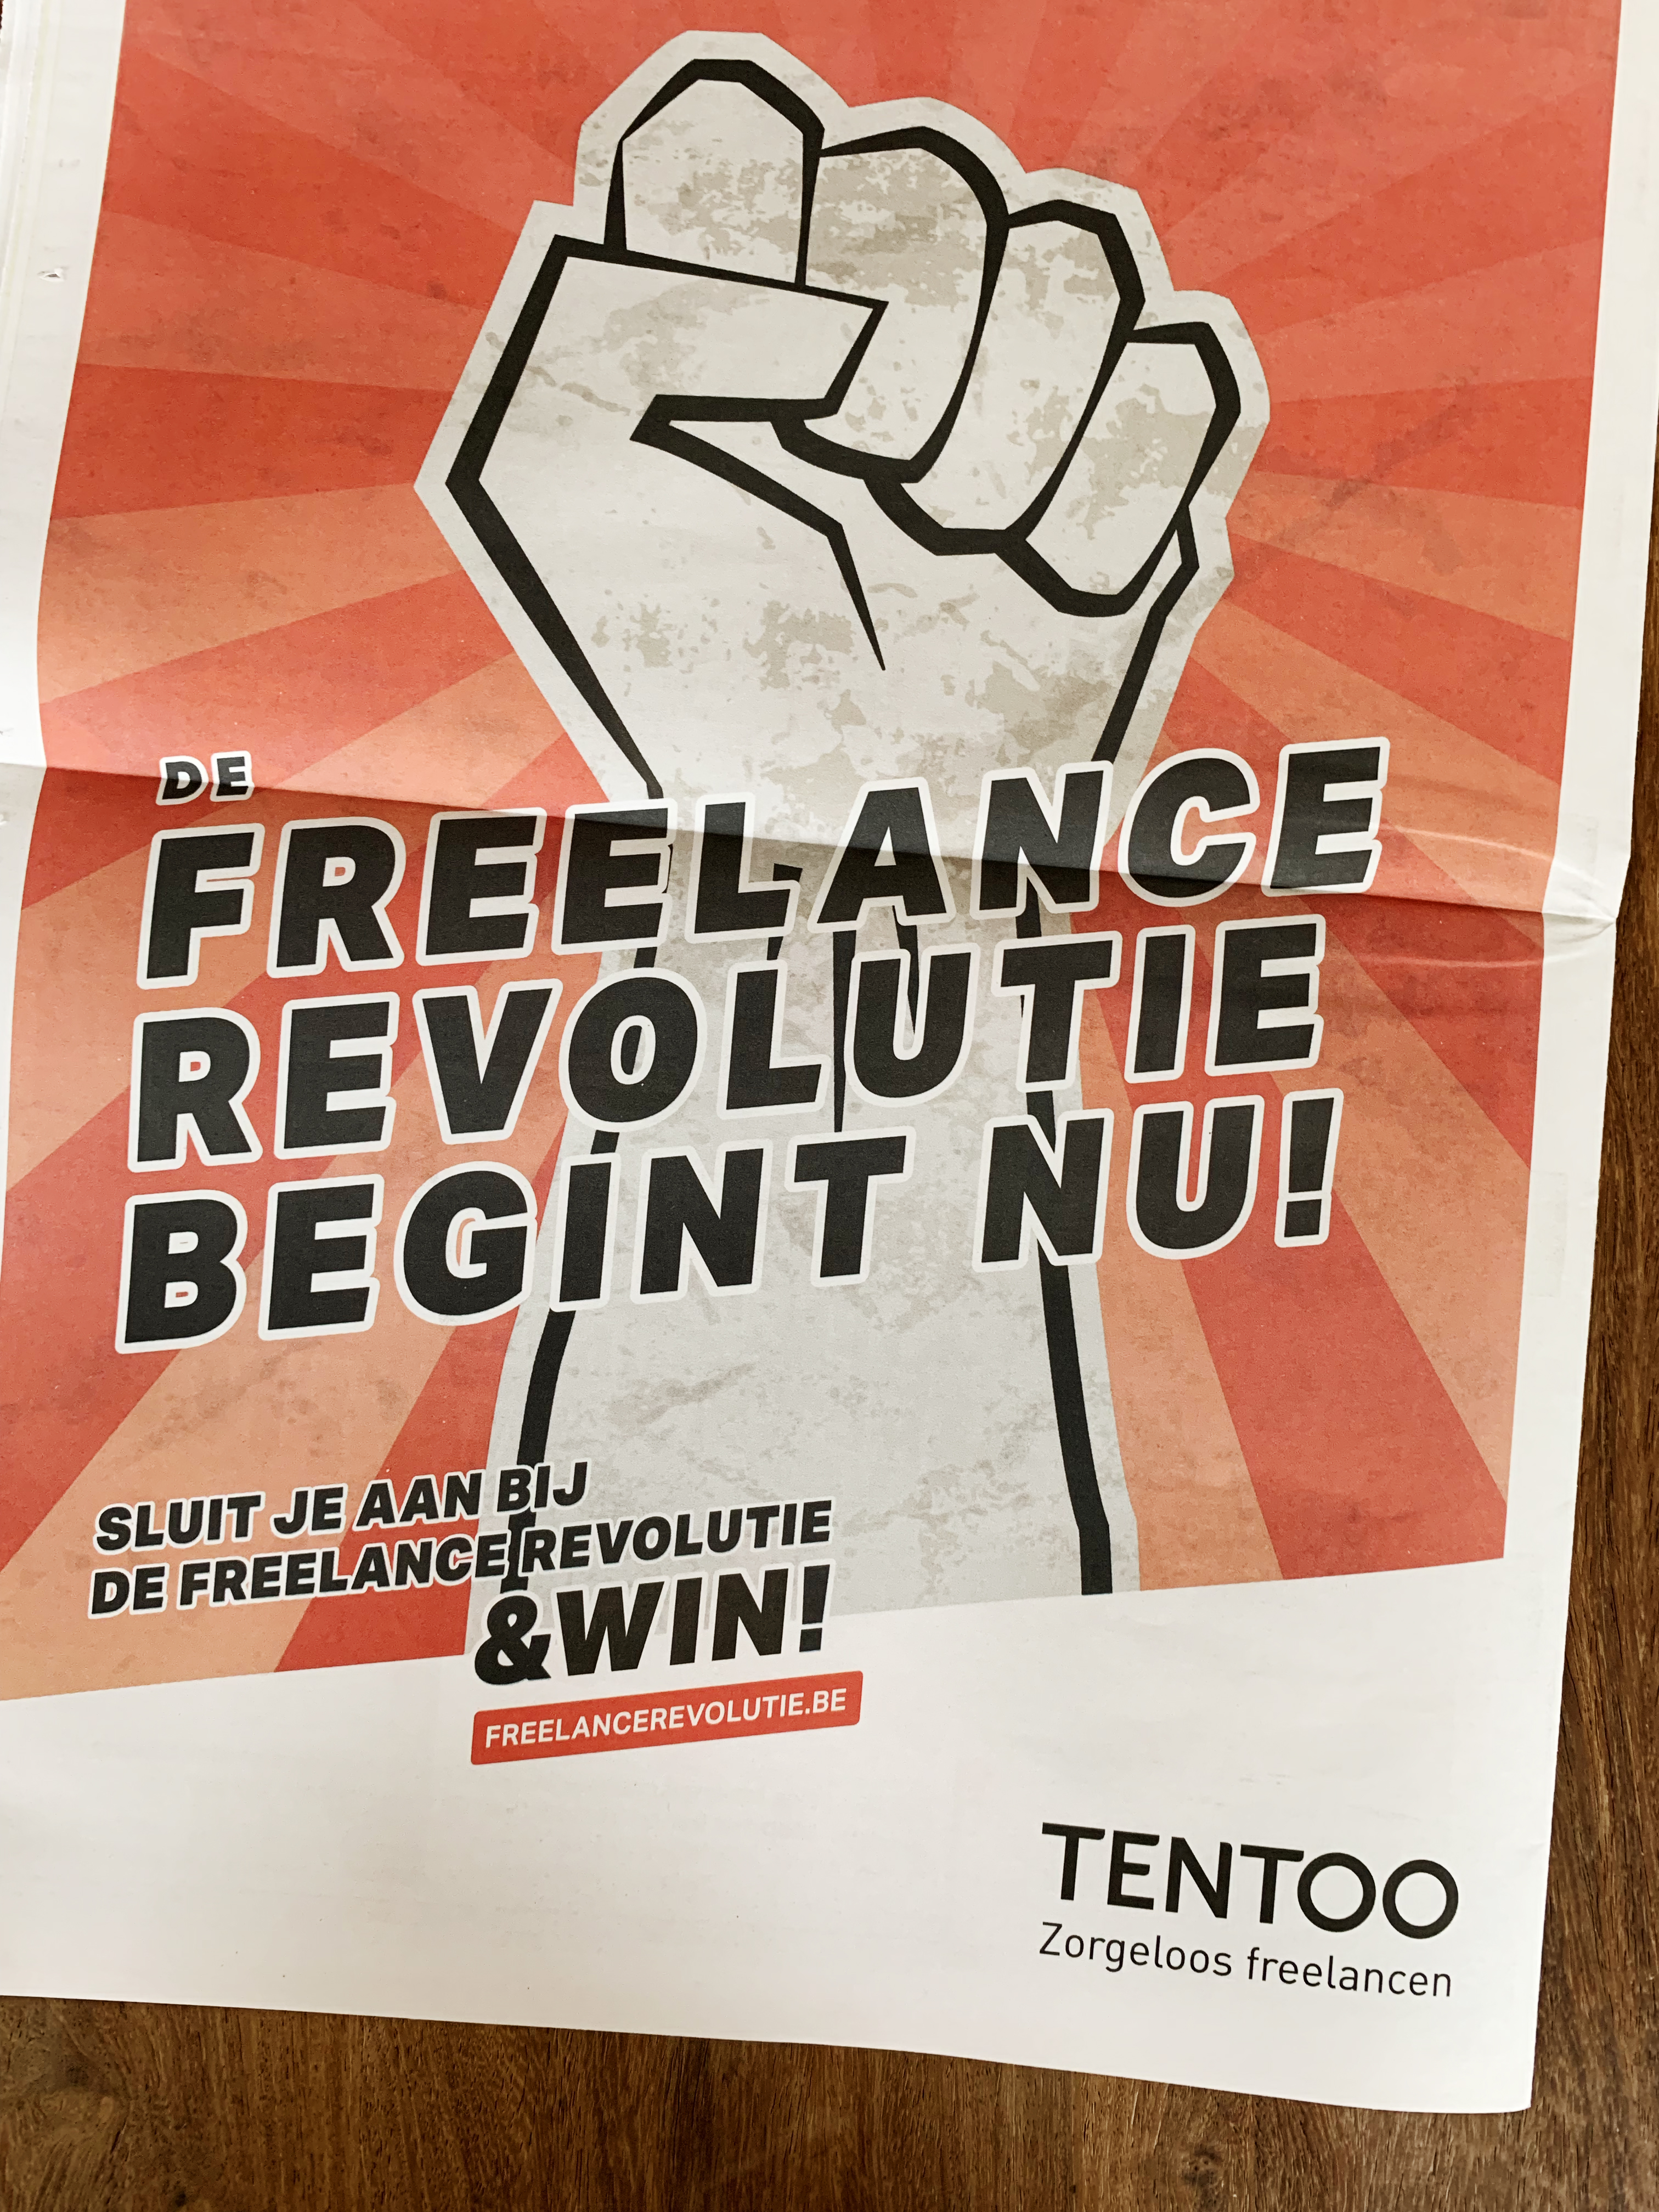 ¡Viva la Freelance Revolución!